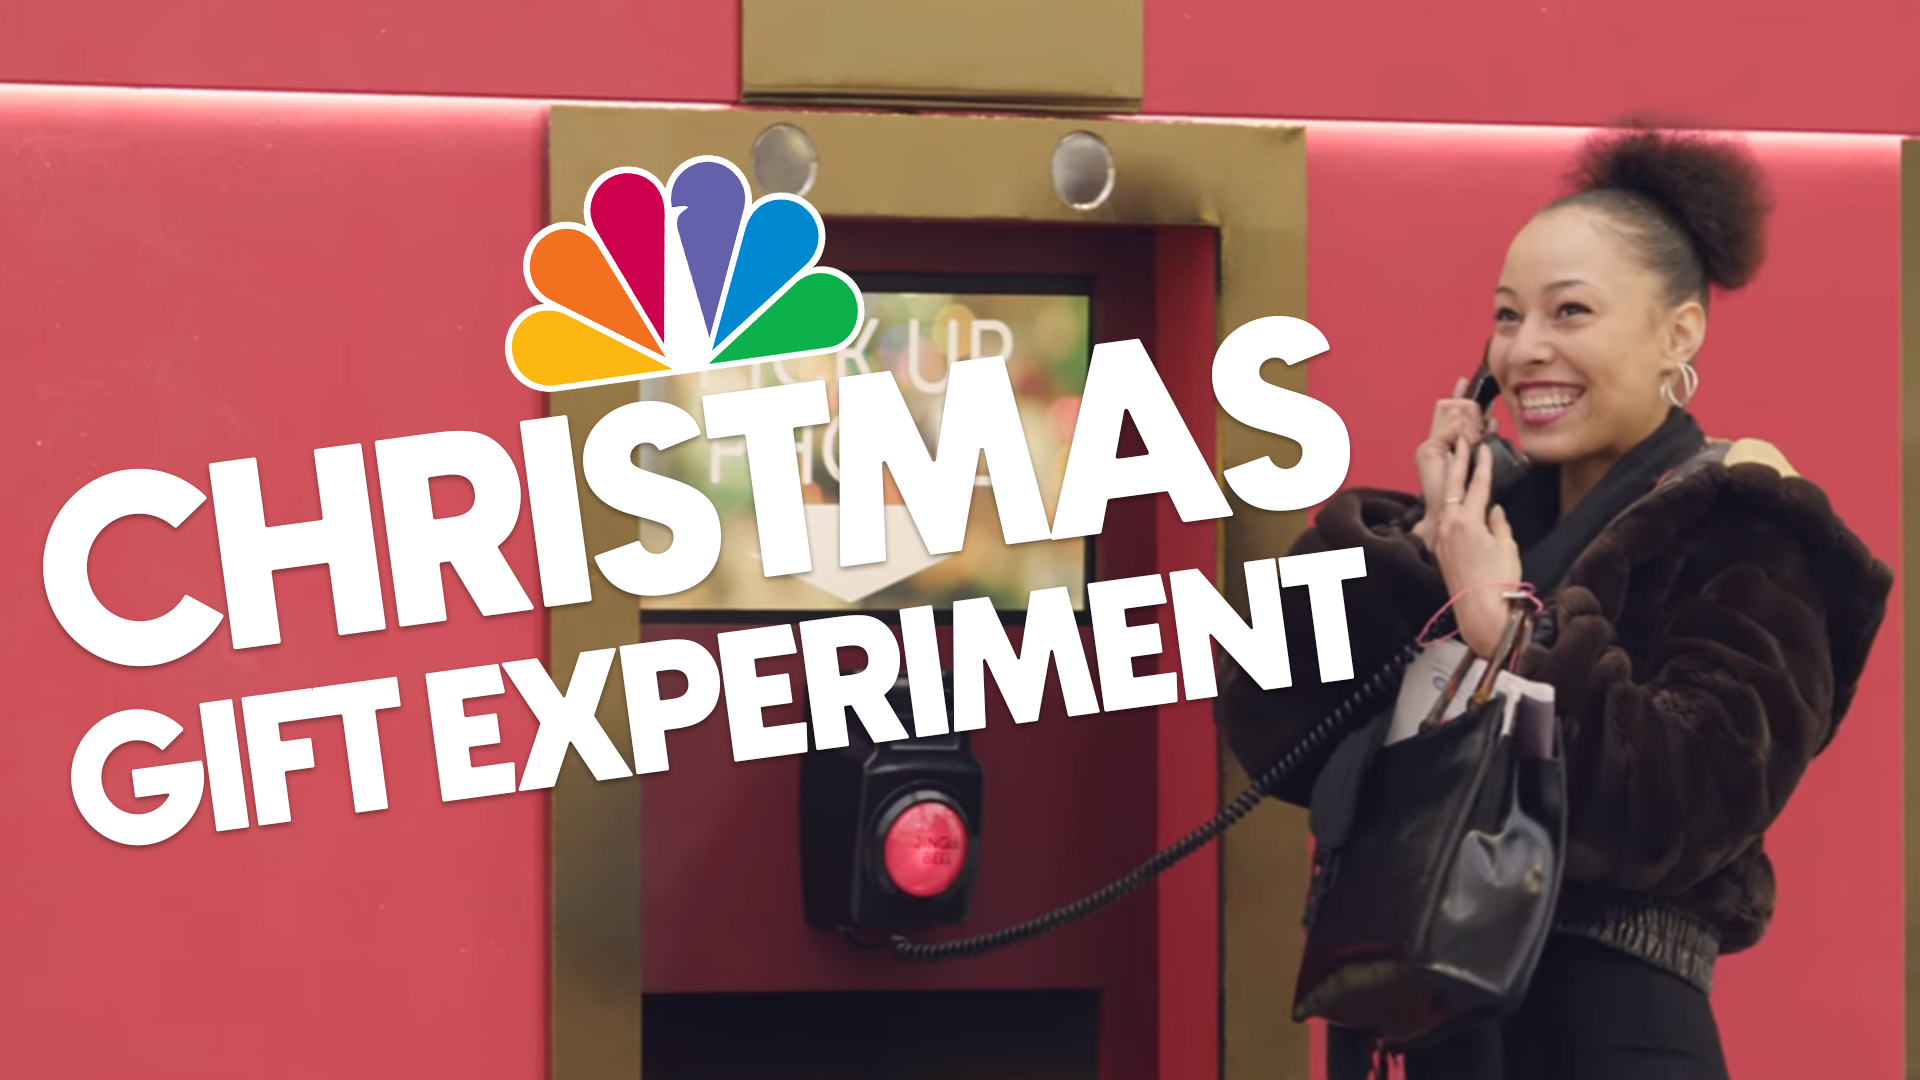 NBC Universal: Christmas Gifts